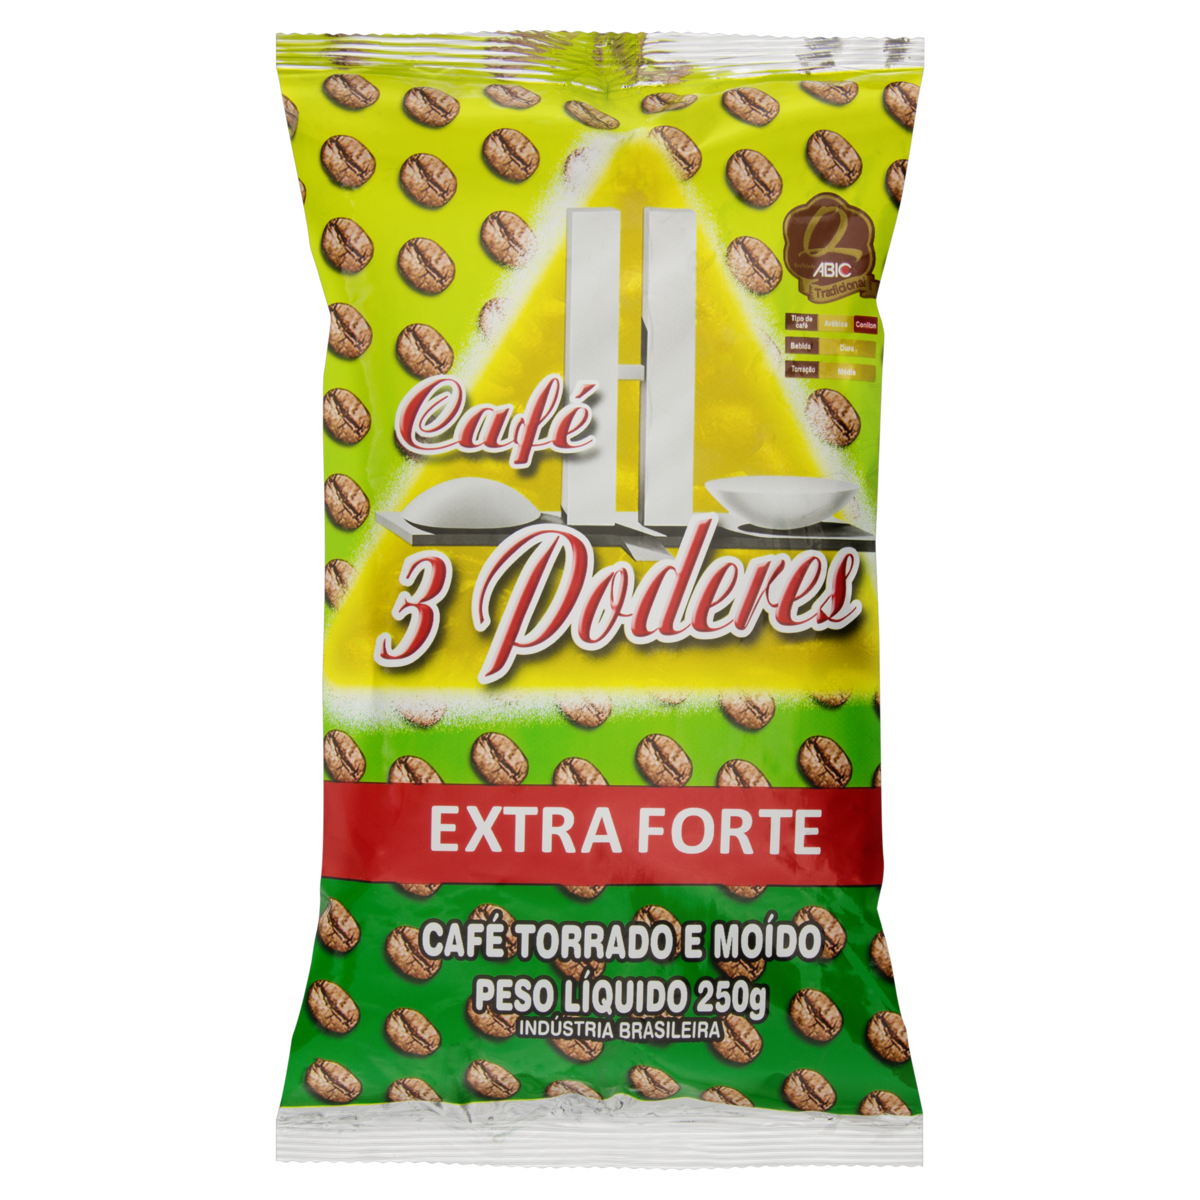 7896253400178 - CAFÉ TORRADO E MOÍDO EXTRAFORTE CAFÉ 3 PODERES PACOTE 250G